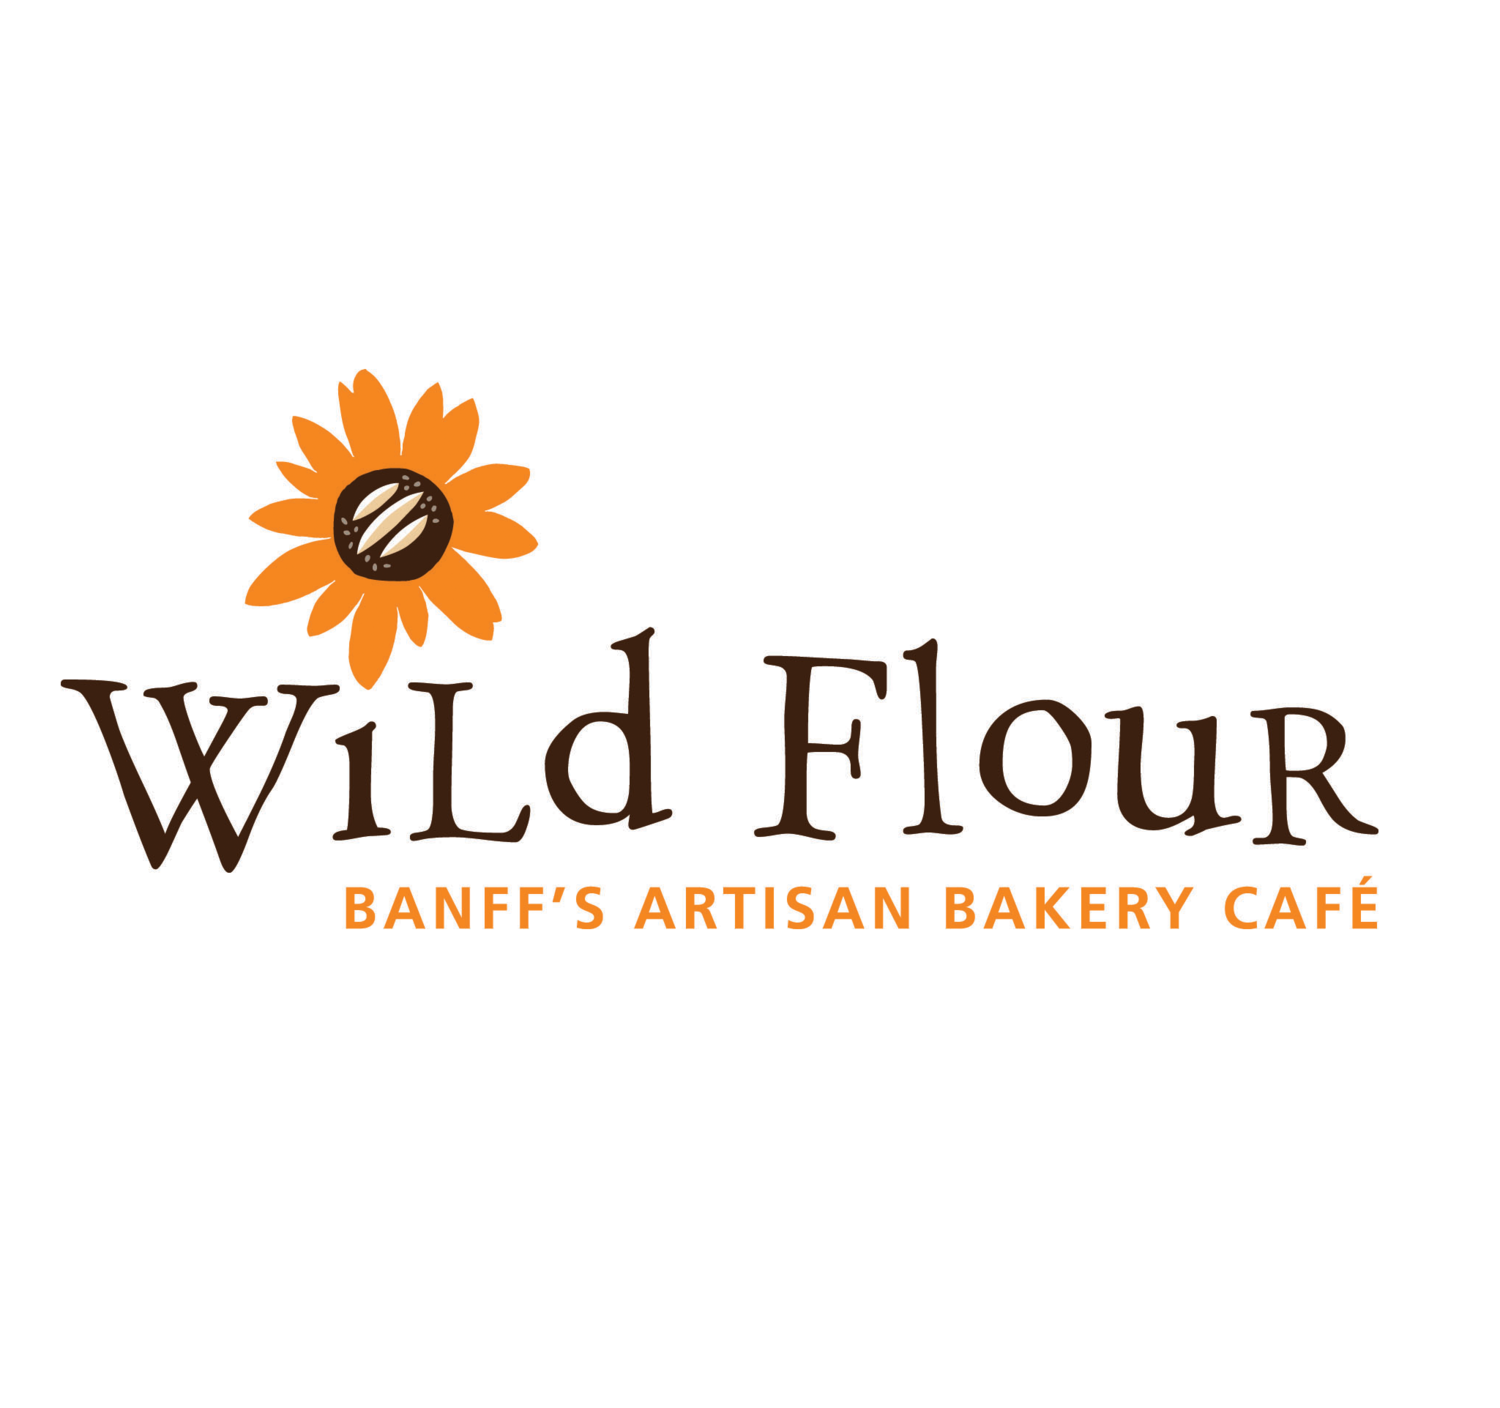 Wild Flour Banff's Artisan